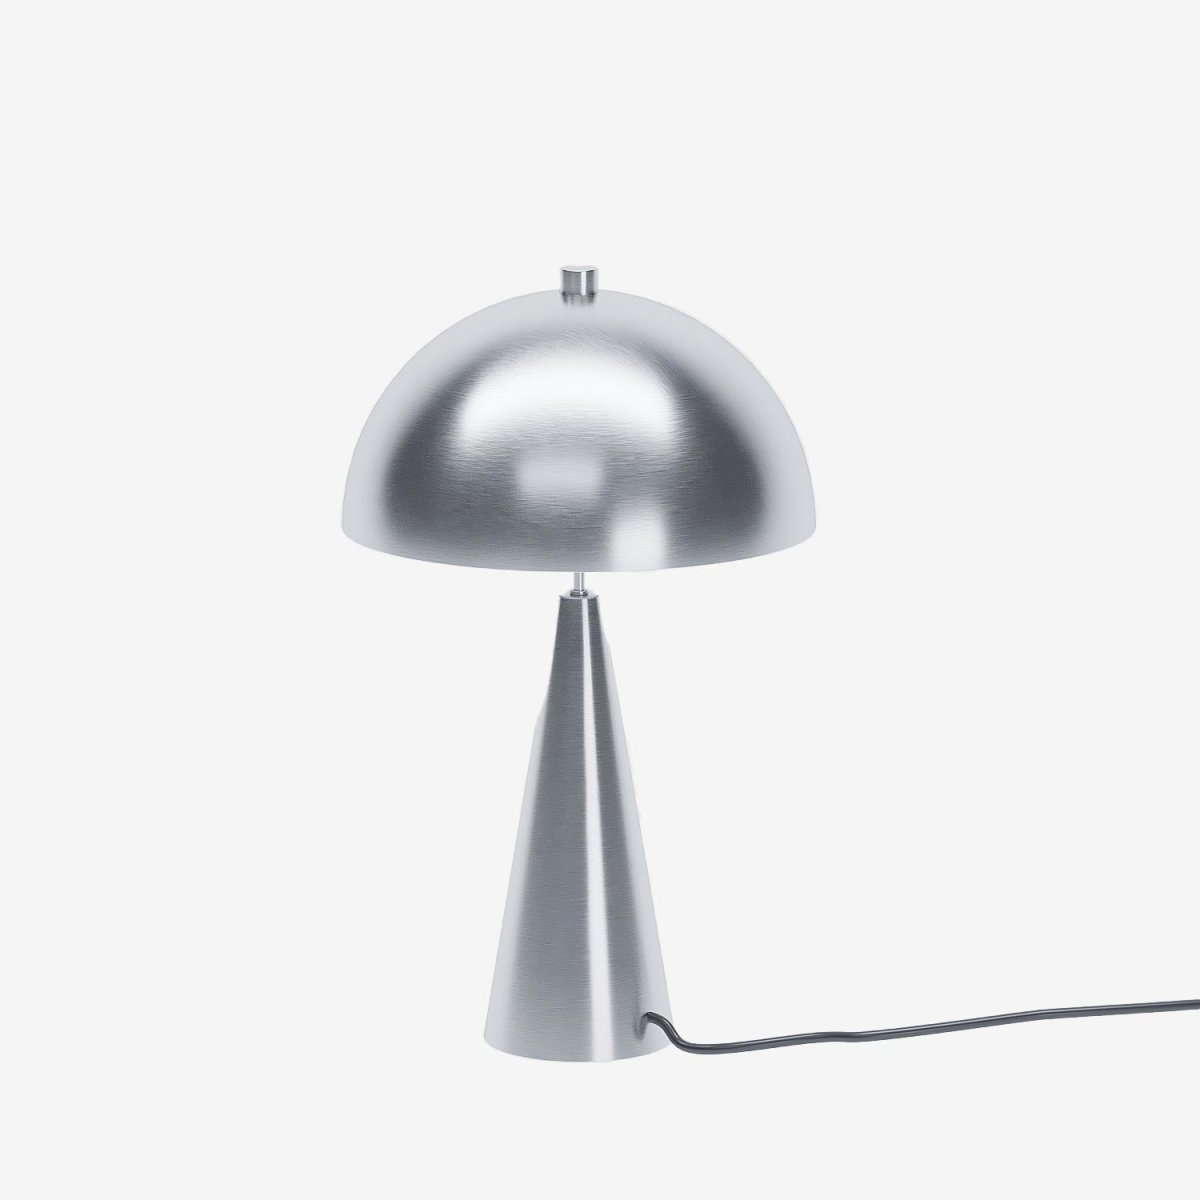 Lampe à poser champignon en métal argent- Potiron Paris, le luminaire design de la décoration d'intérieur chic et moderne pas chère